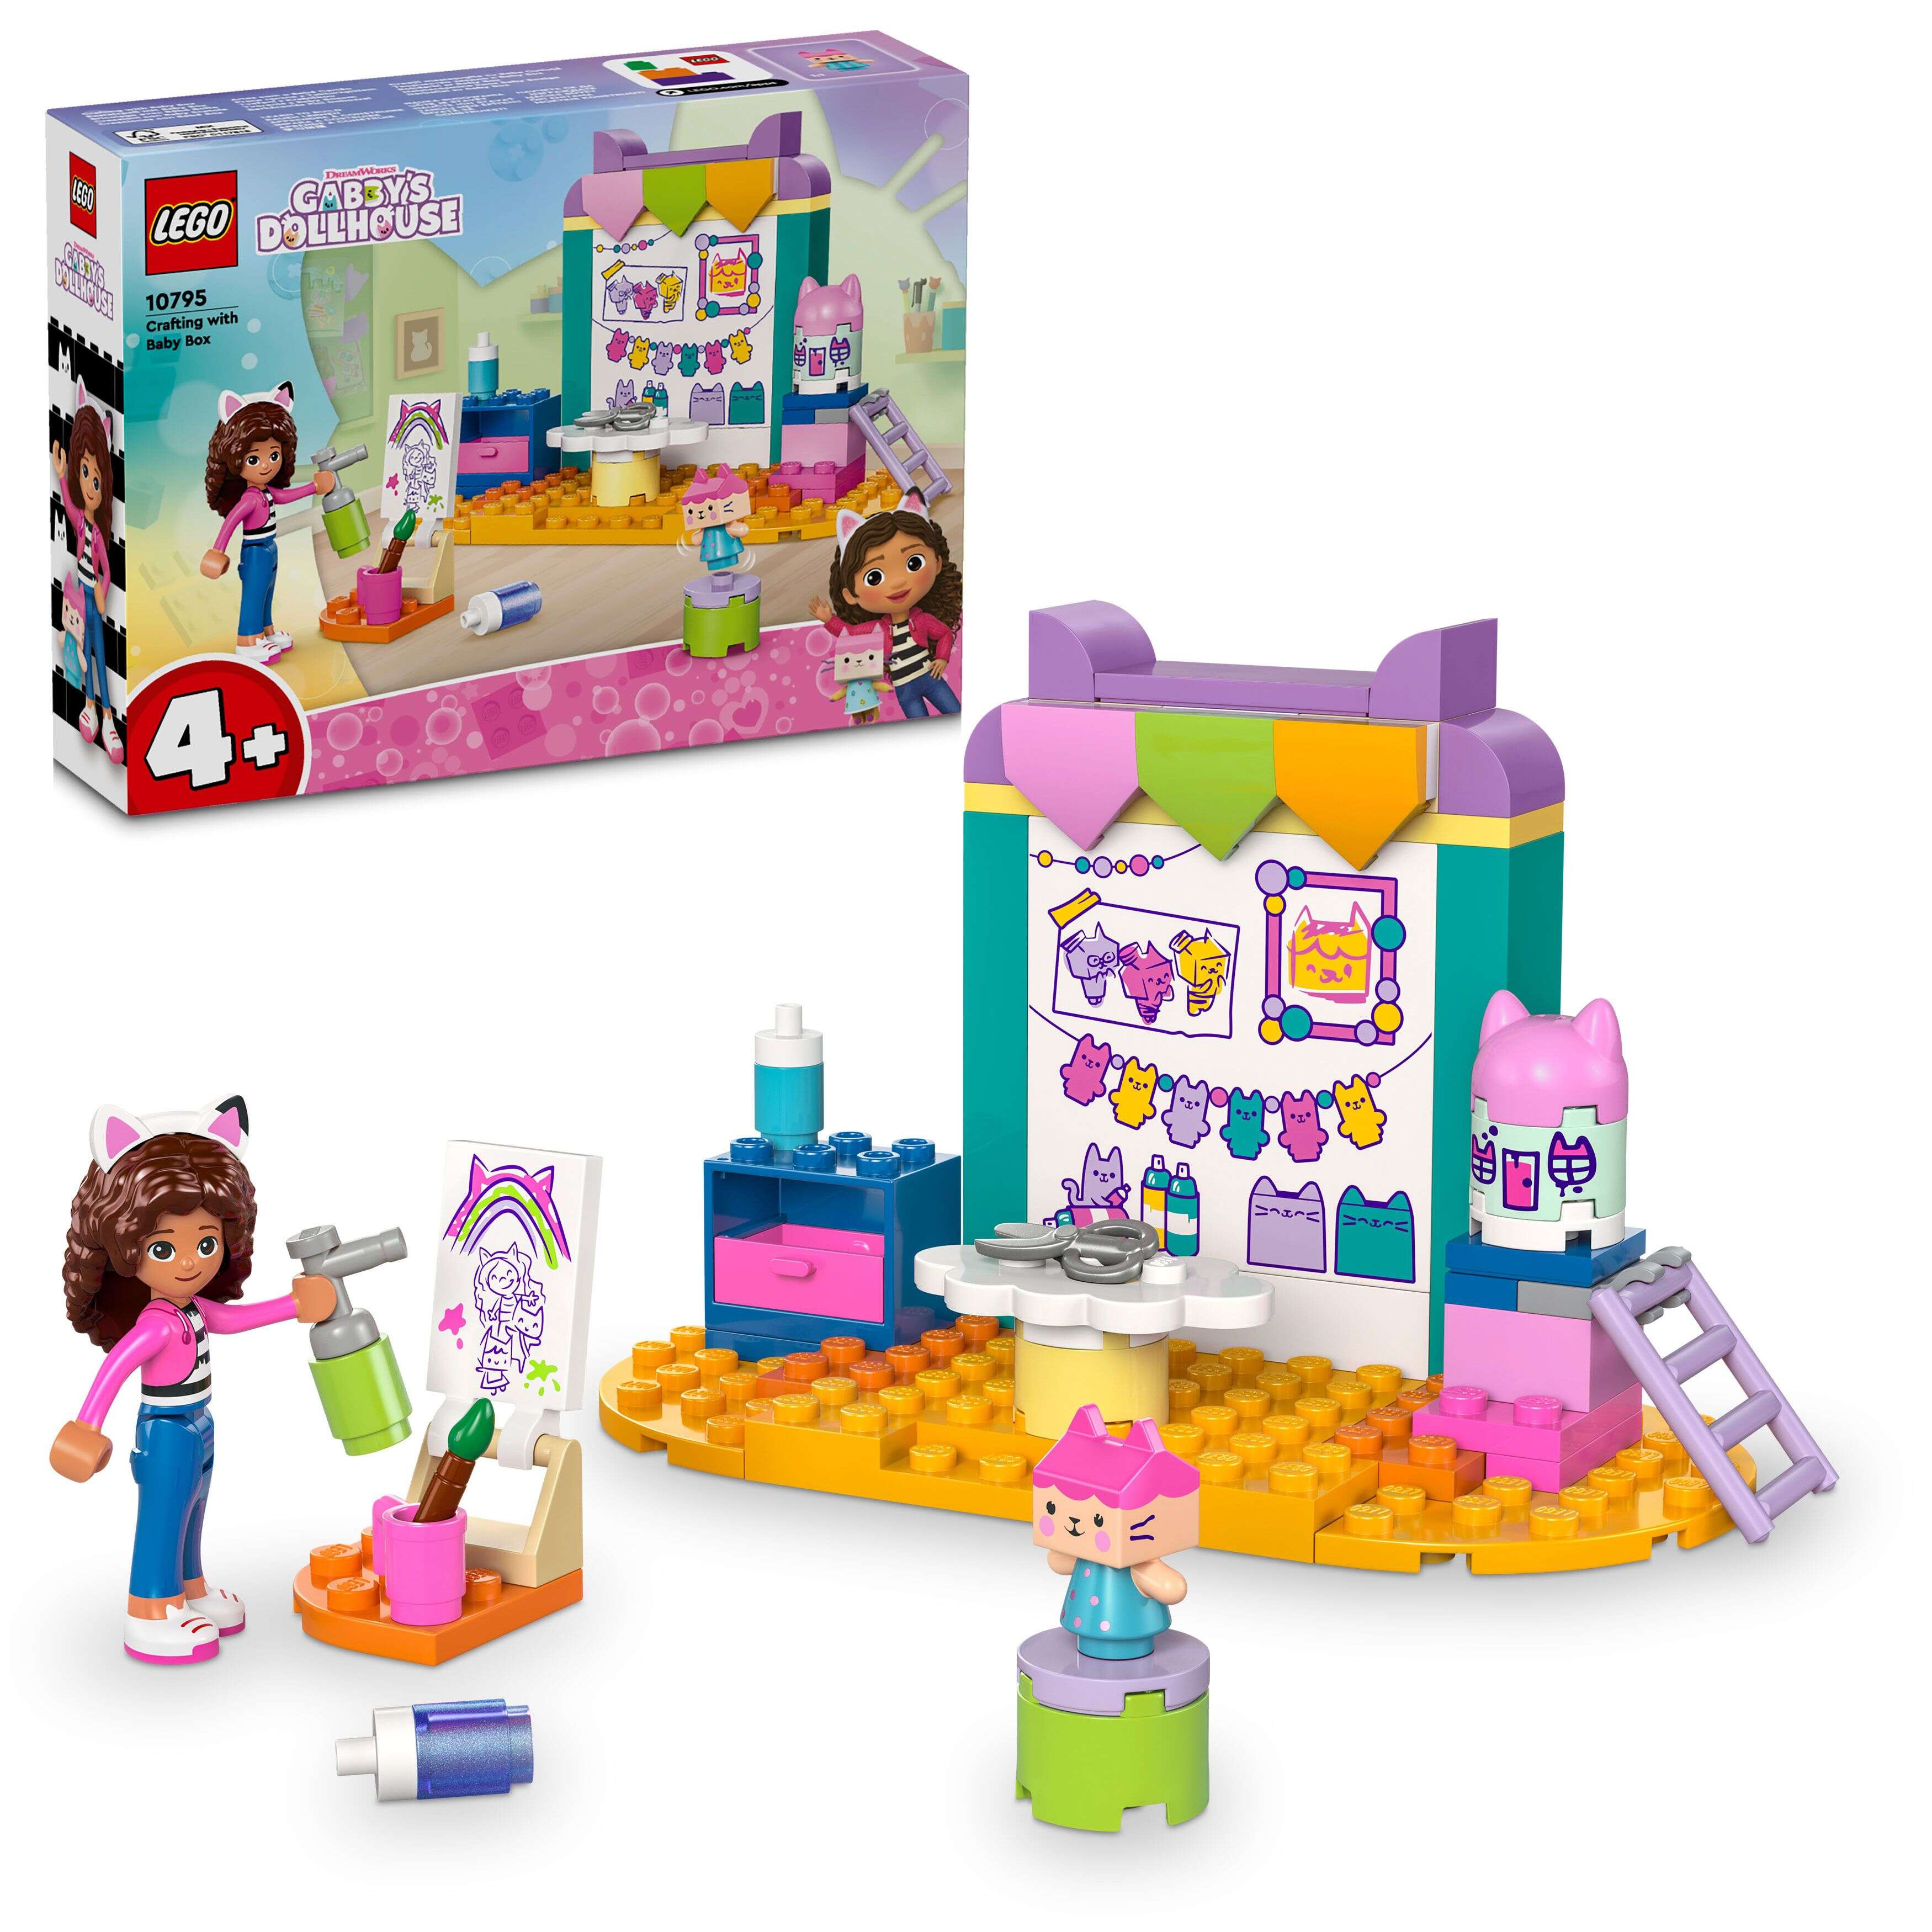 LEGO 10795 Gabby's Dollhouse Bastelspaß mit Baby Box, 2 Figuren